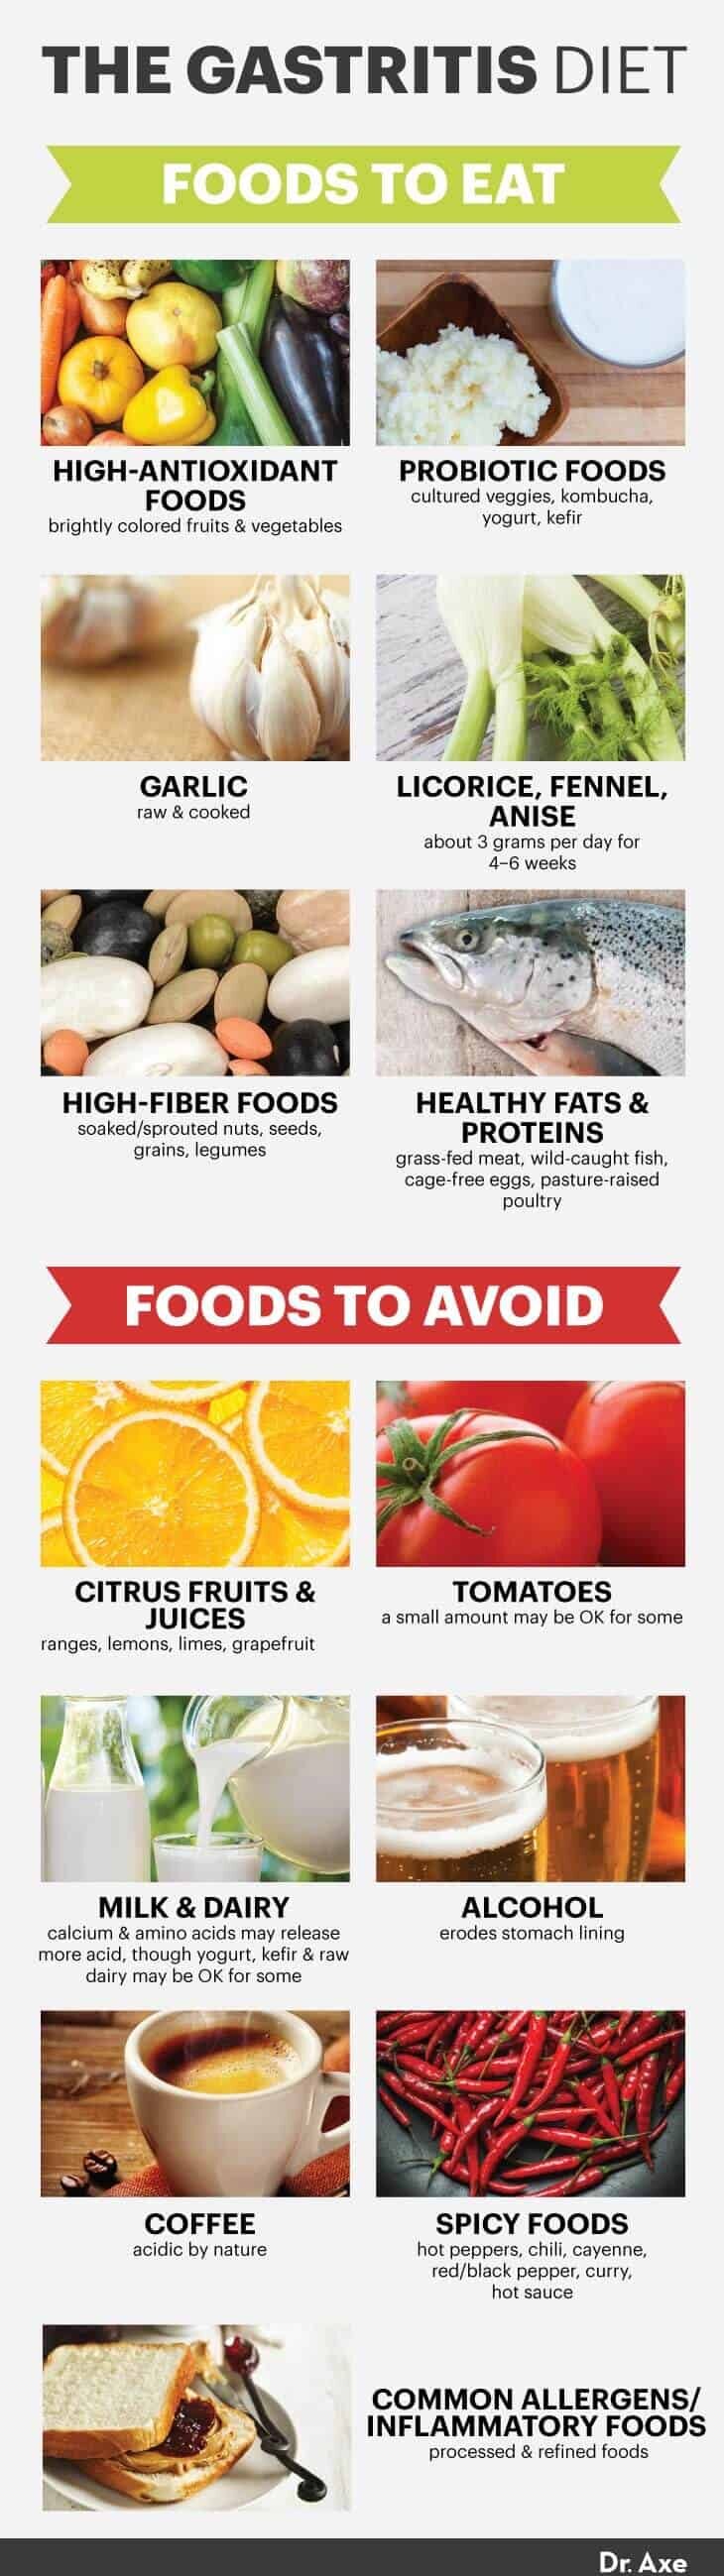 Gastritis diet foods - Dr. axe